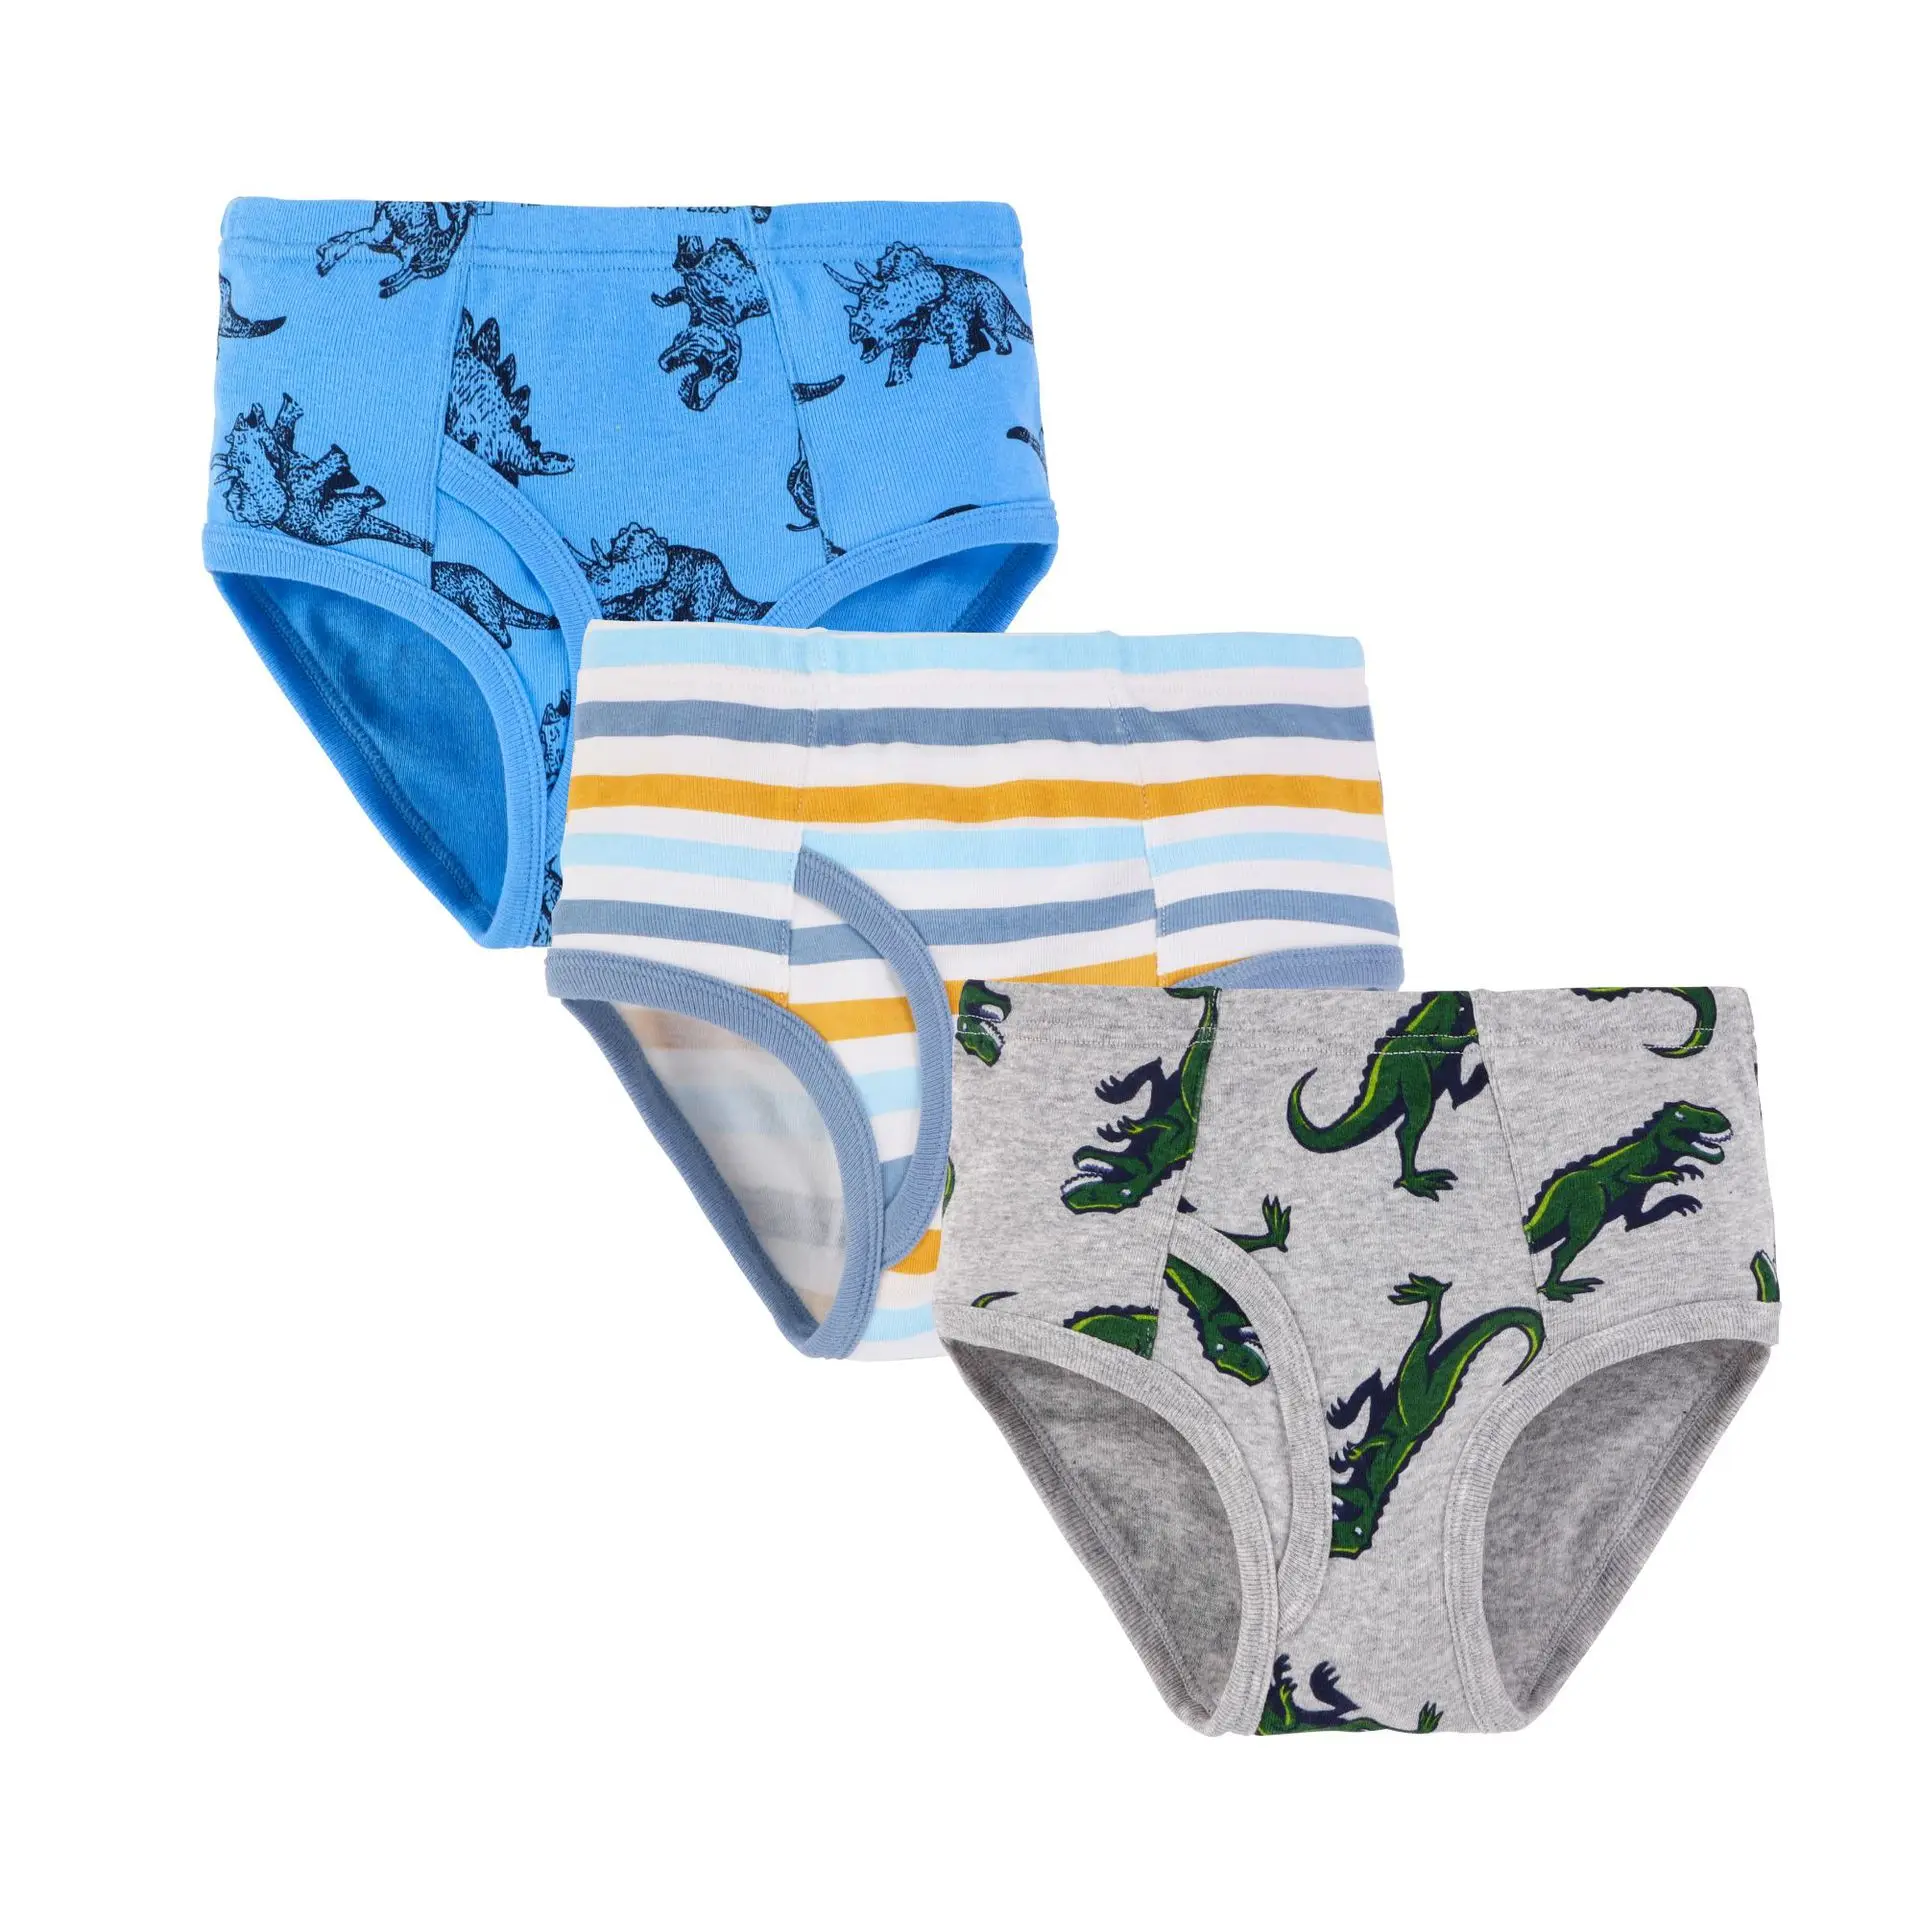 Buy Wholesale China Little Boys Underwear Brief,dinosaur Truck